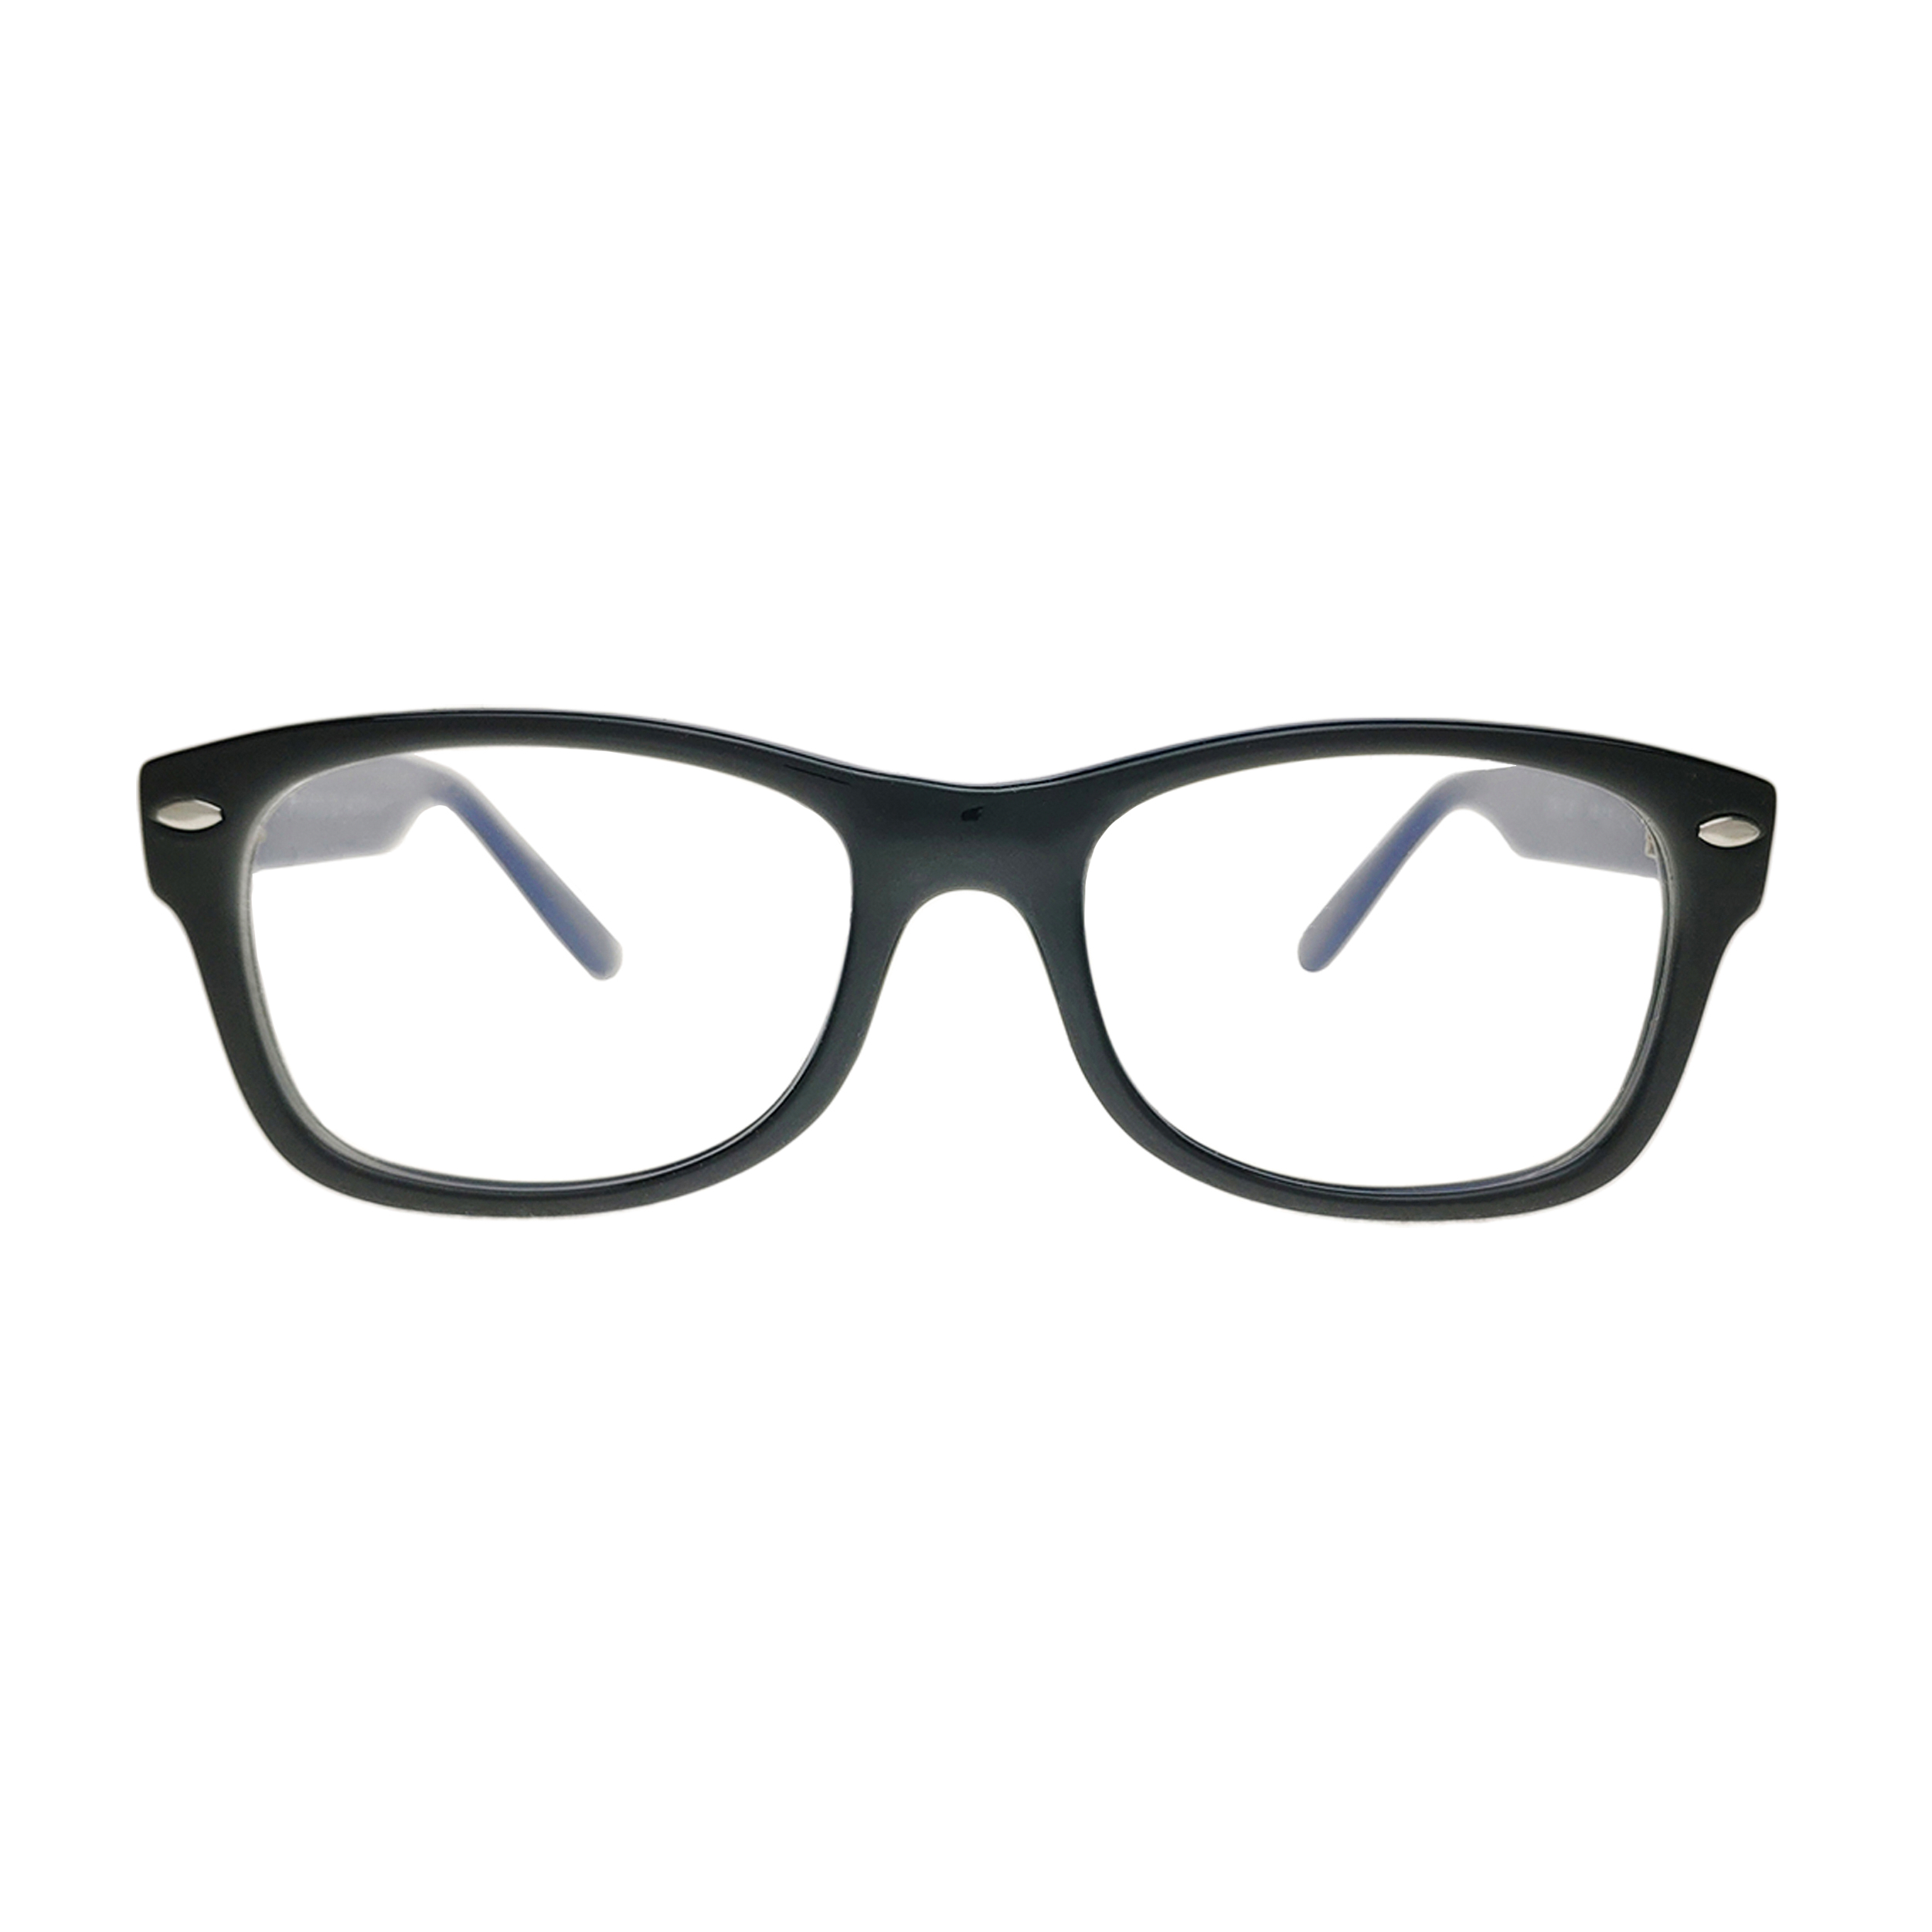 فریم عینک طبی بچگانه اوپال مدل 1573 - OWII175C01 - 46.16.130